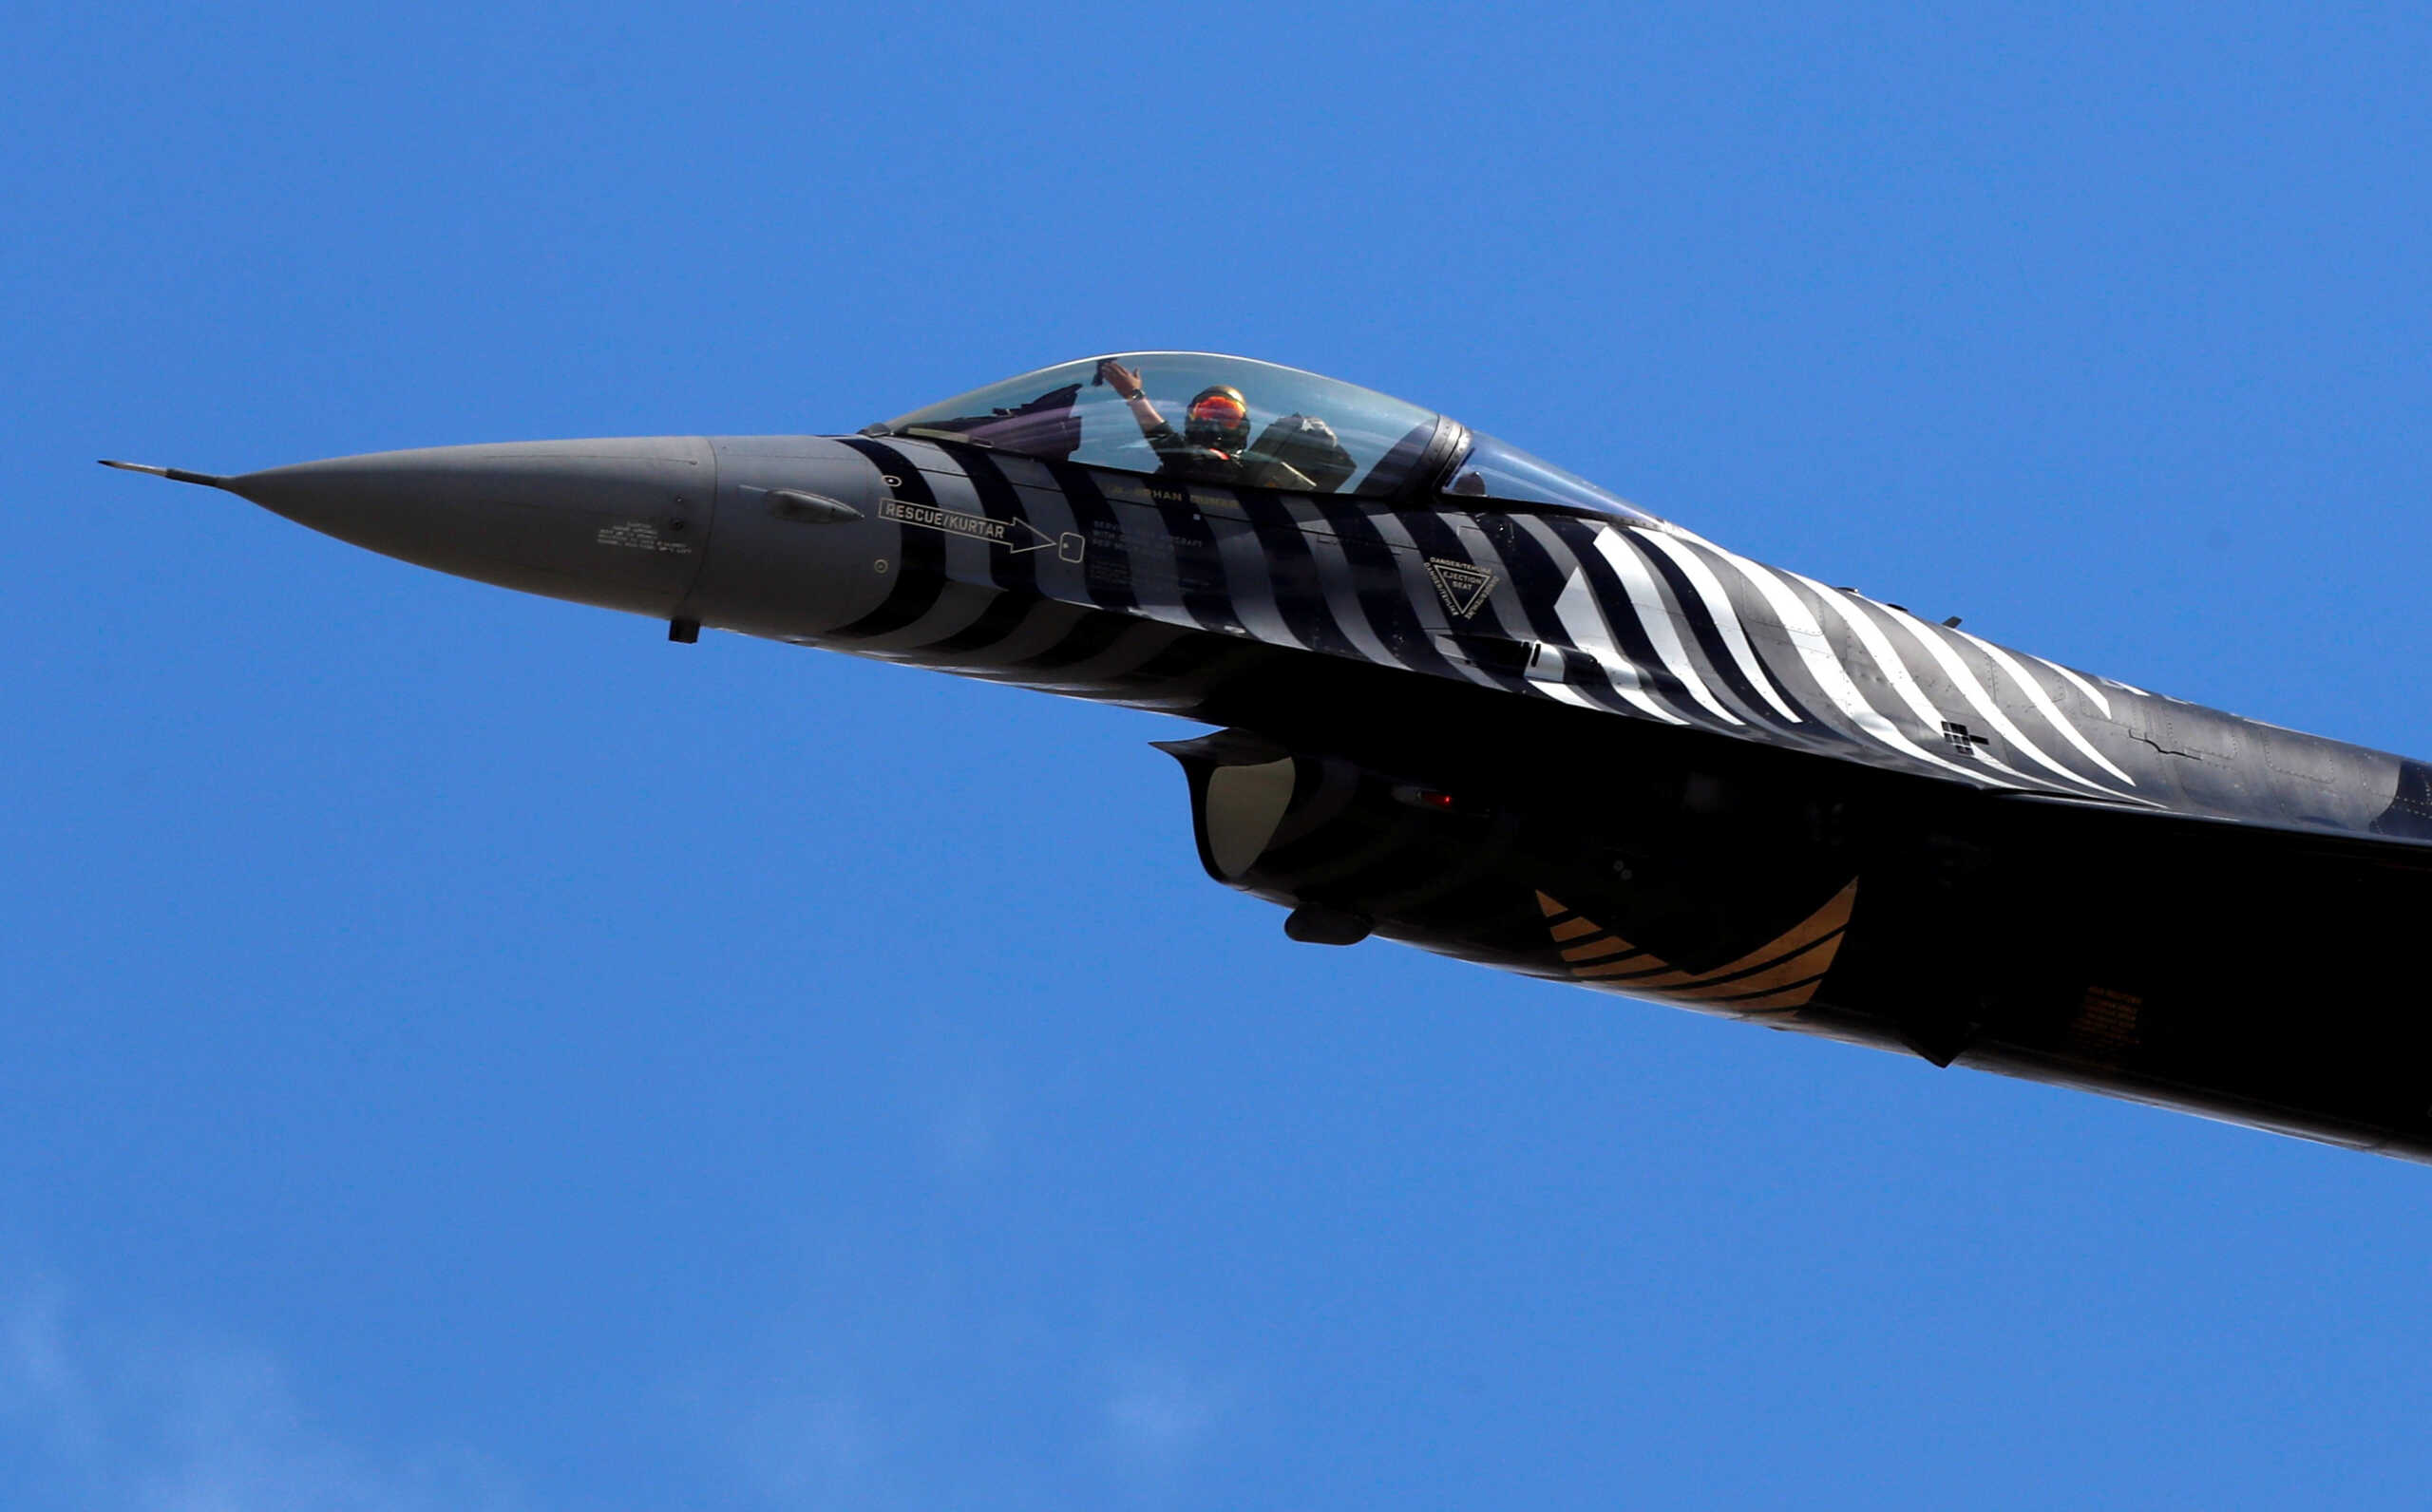 Τουρκικά ΜΜΕ για F-16: Το Στέιτ Ντιπάρτμεντ ενέκρινε την πώληση κιτ εκσυγχρονισμού